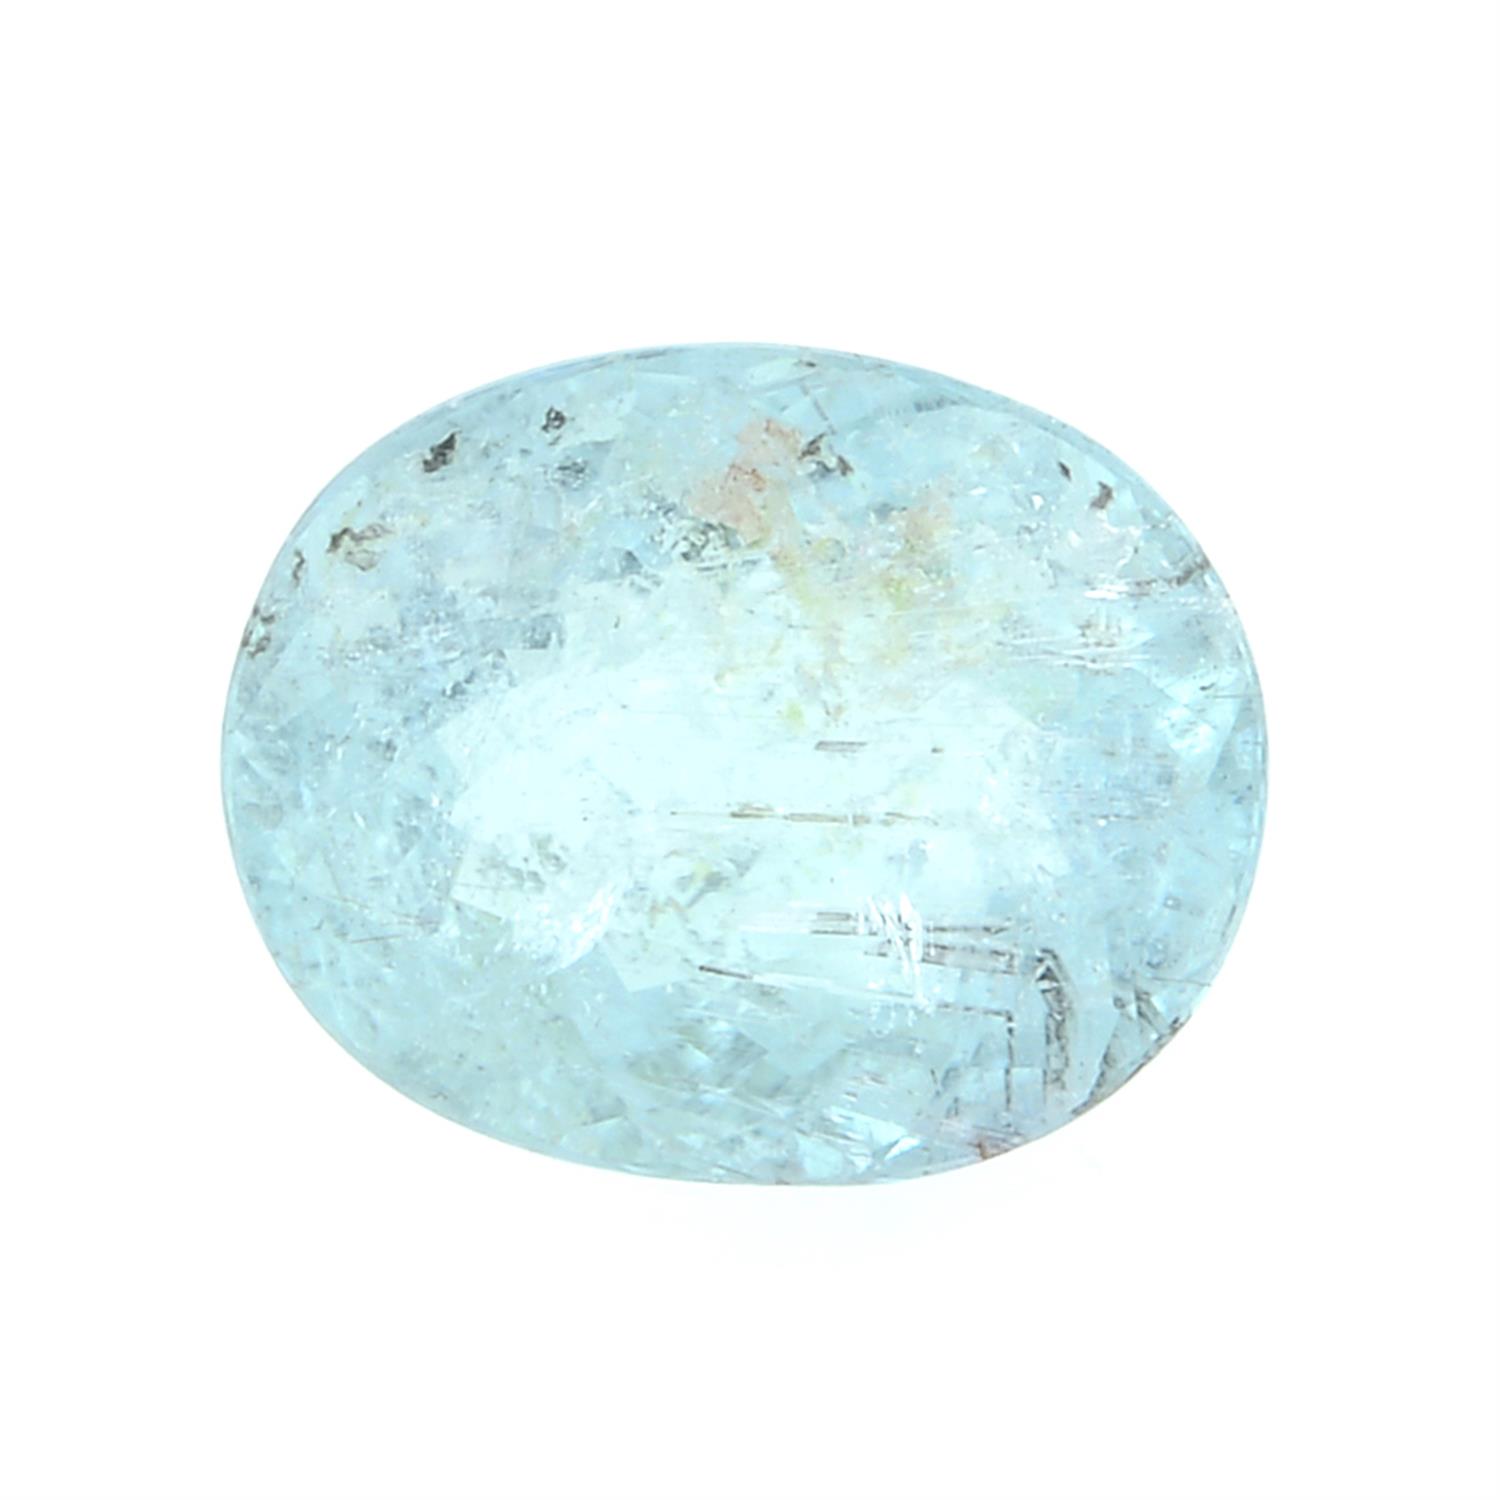 An oval-shape light blue tourmaline, weight 1.08cts.